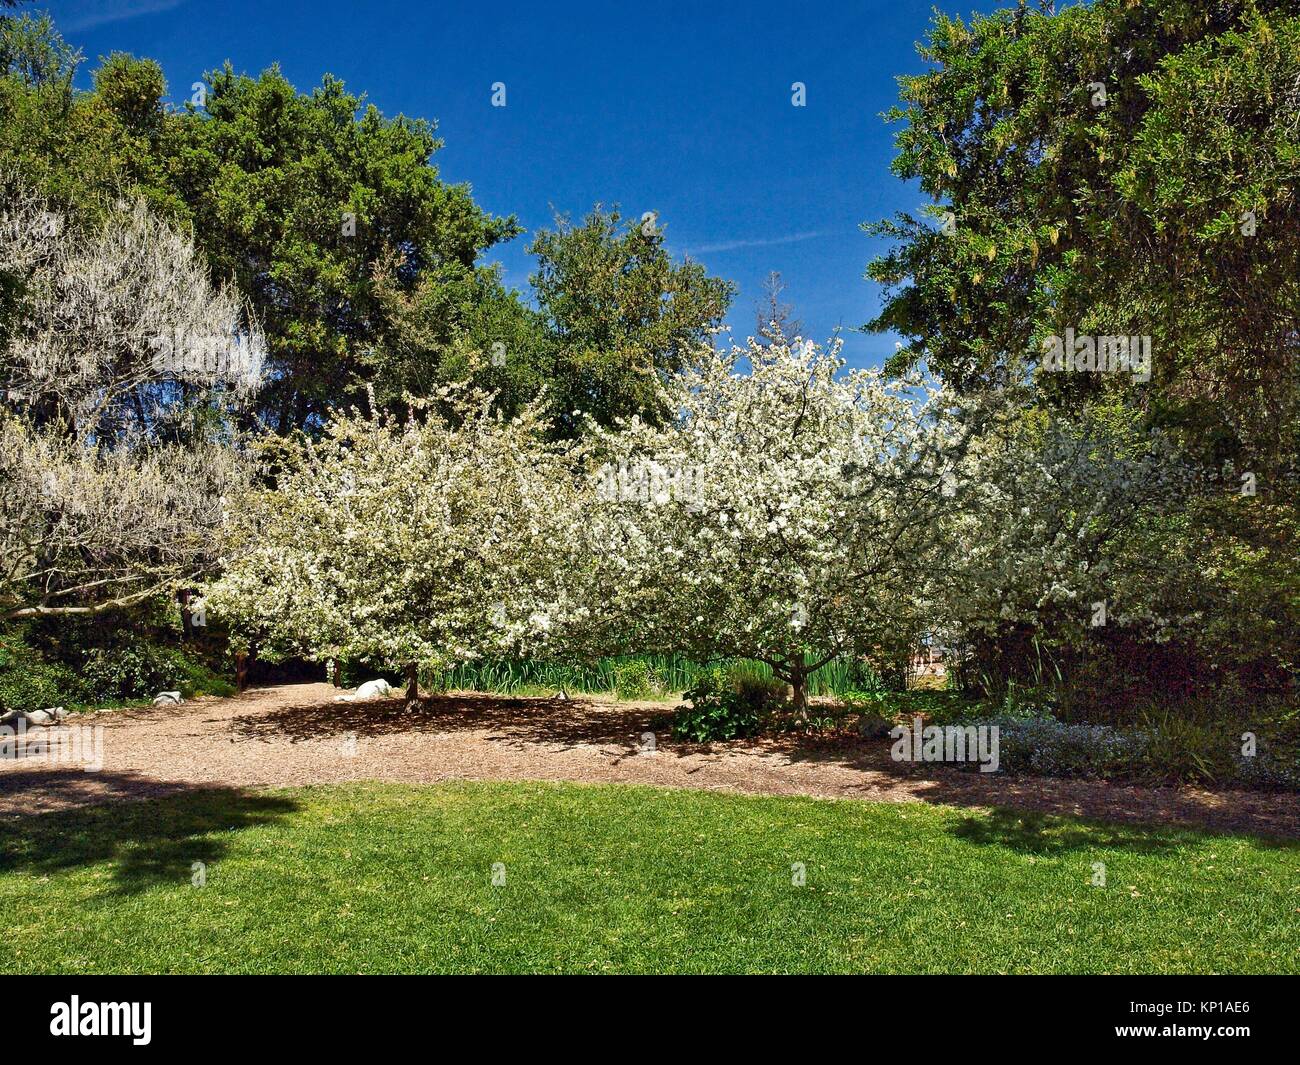 Flowering cherry trees (genus Prunus) (Prunus serrulata) or Japanese cherry in Descanso Garden, a public botanic garden near downtown Los Angeles. Stock Photo